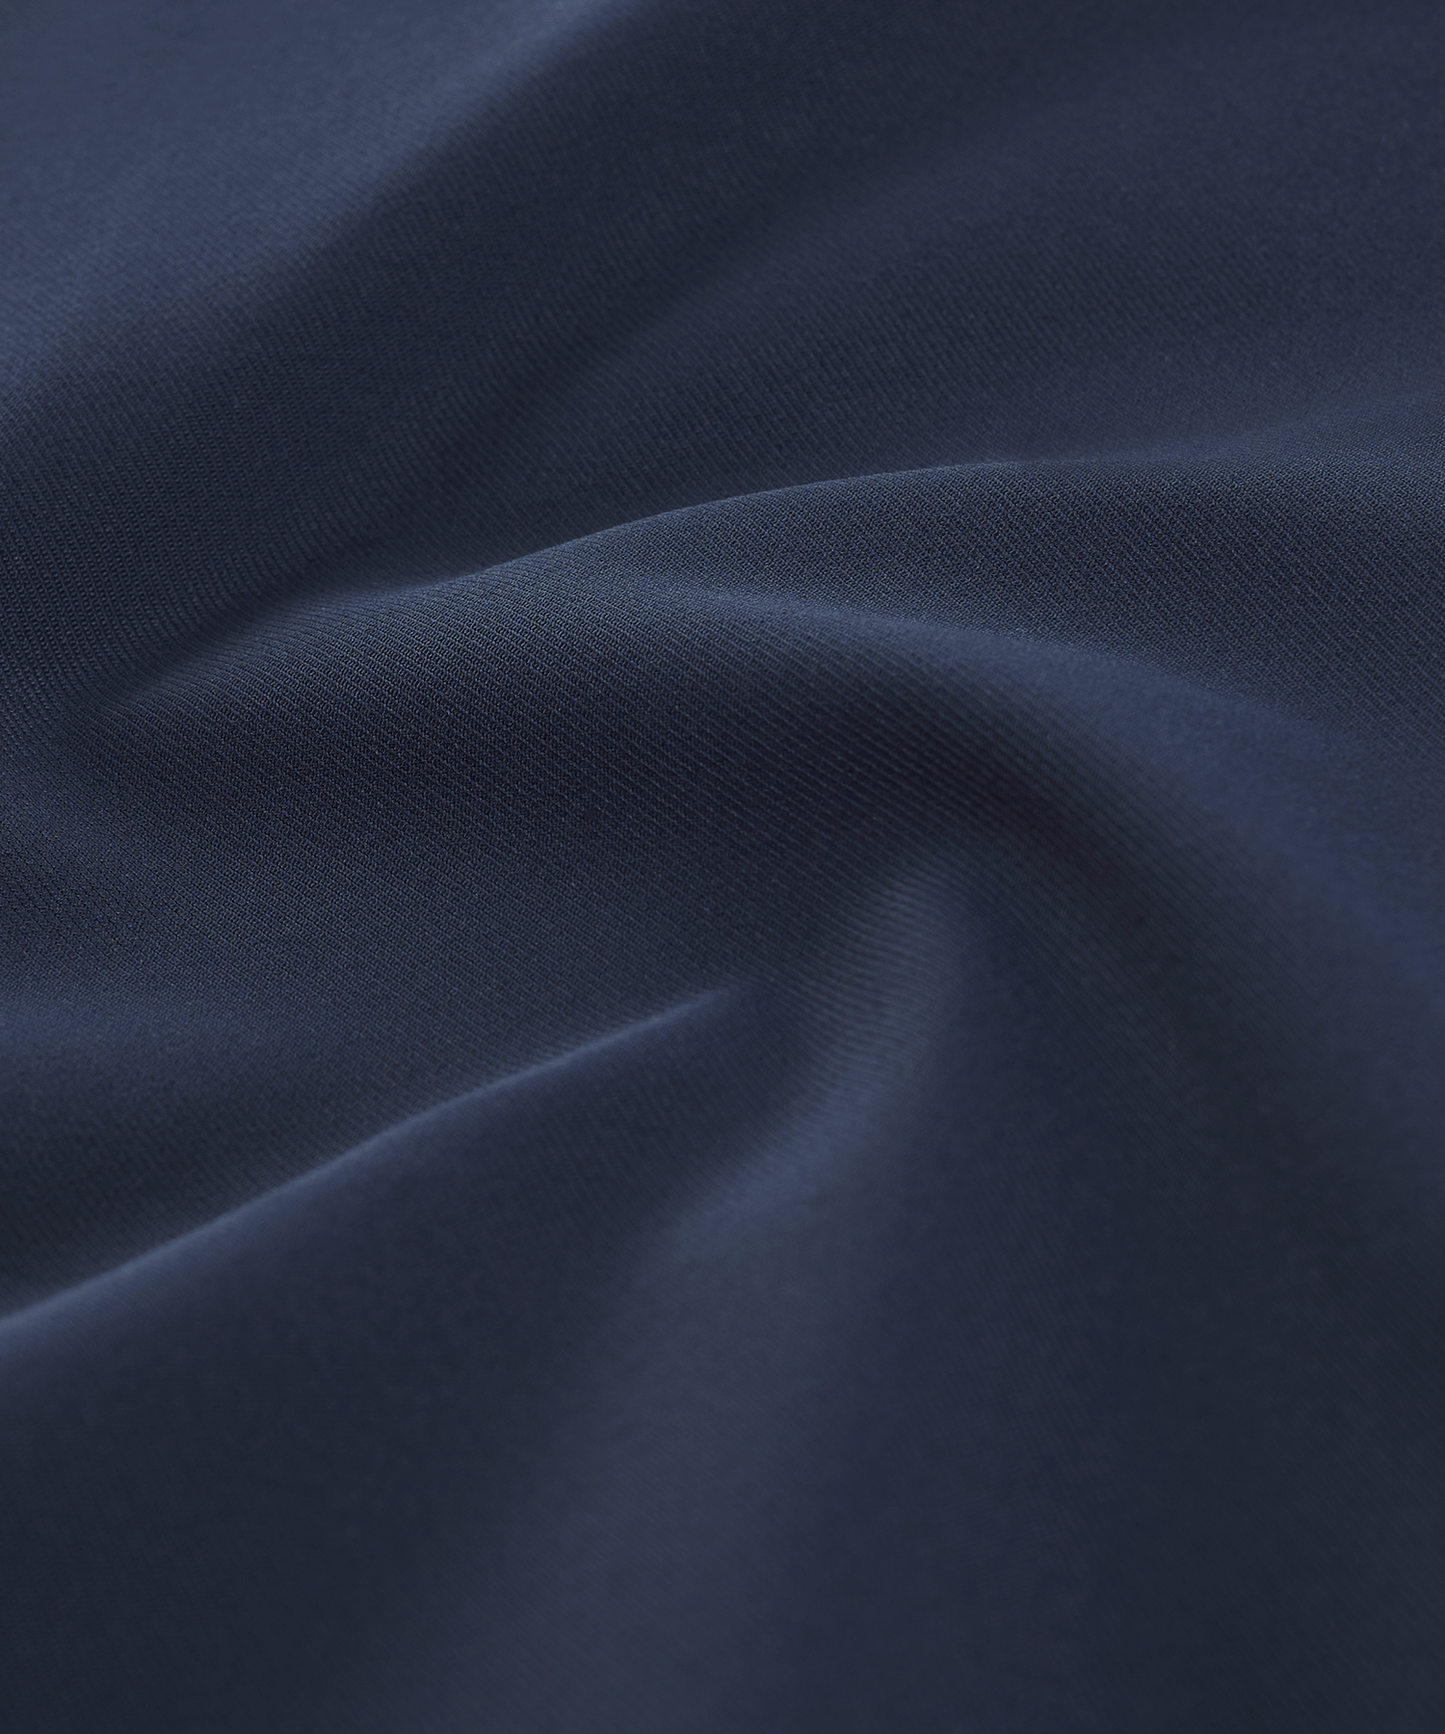 Trench coat techfabric donkerblauw